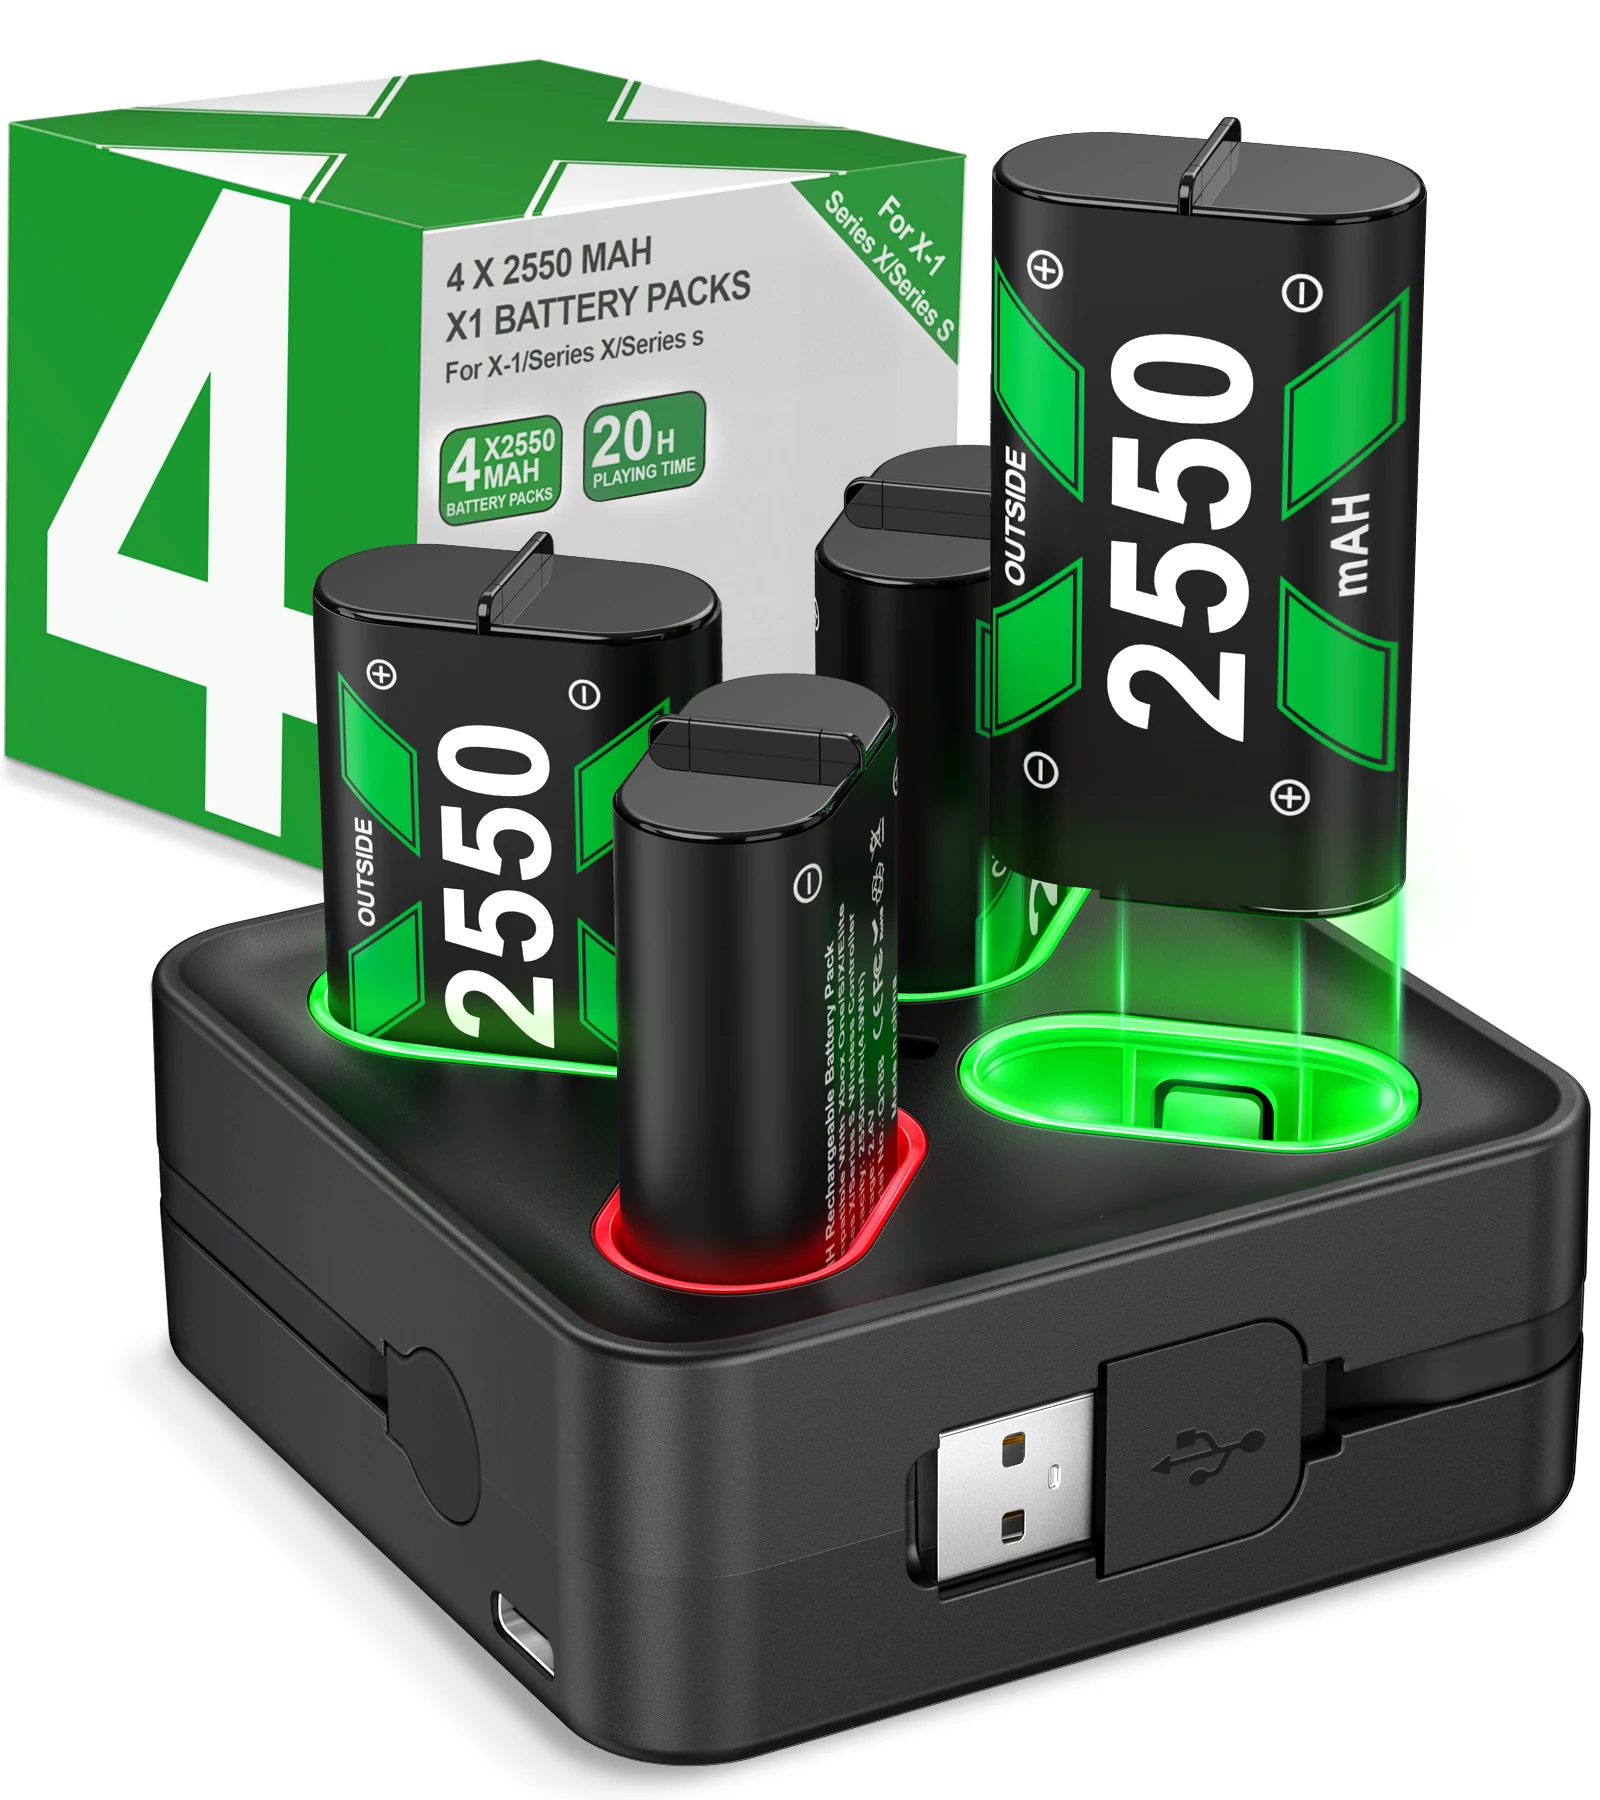 Batería recargable de 4x2550mAh para Xbox One, paquete de batería de controlador para Xbox Series X | S, Xbox One X/Xbox One S/Xbox One Elite